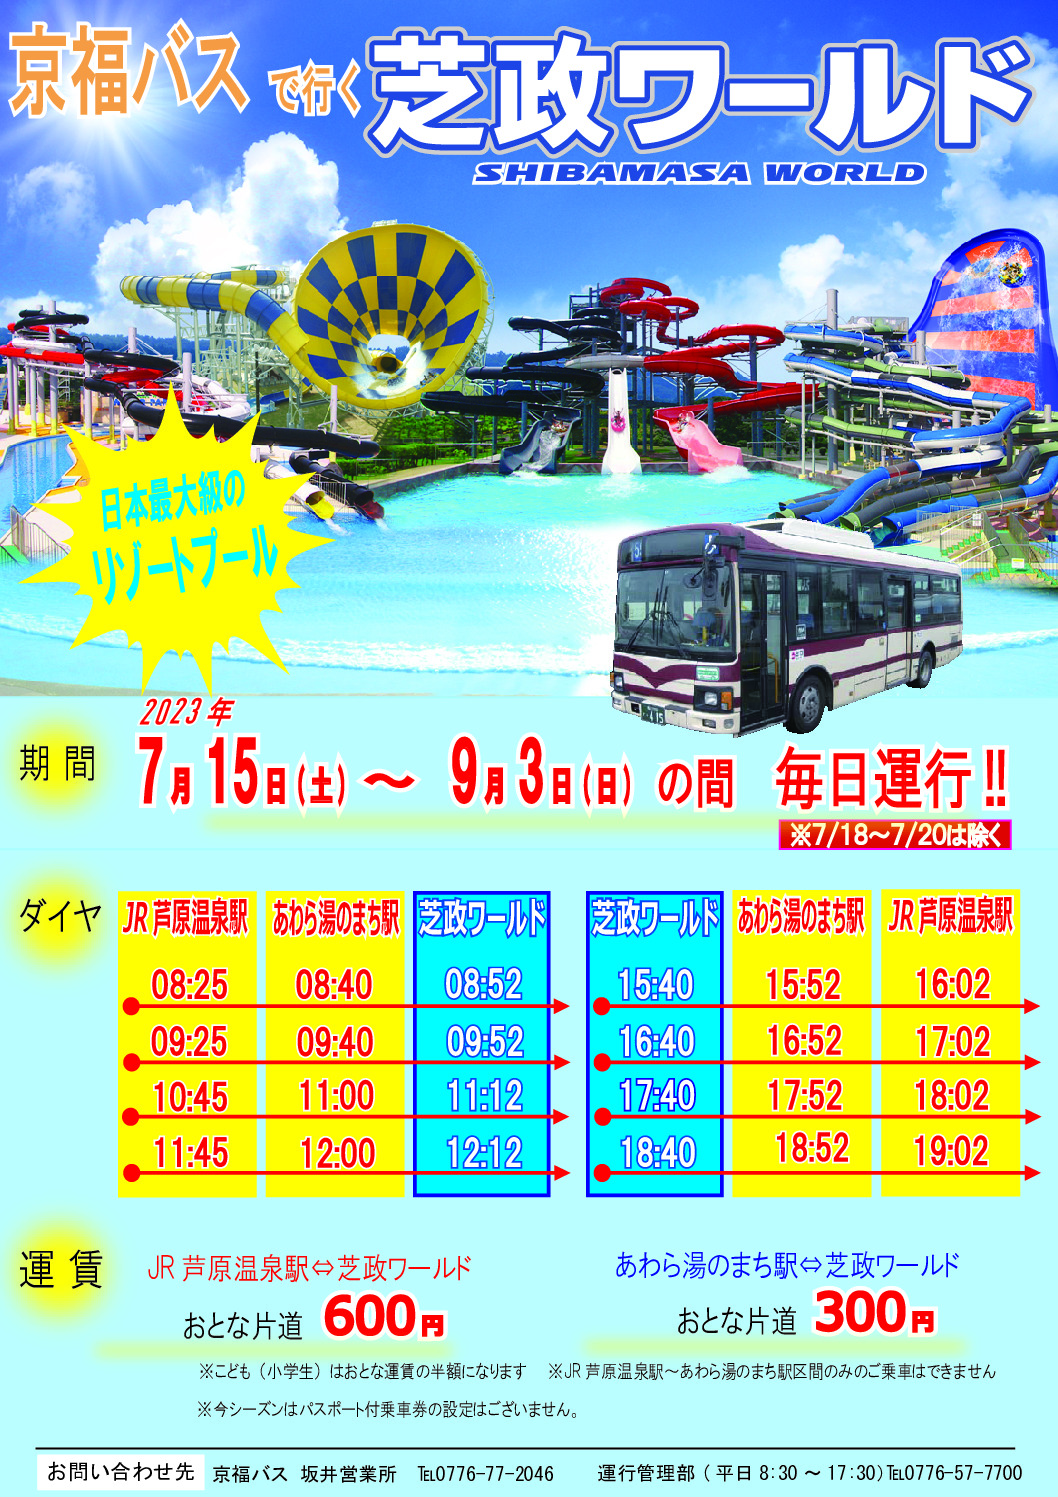 【観光情報】京福バスで行く芝政ワールド